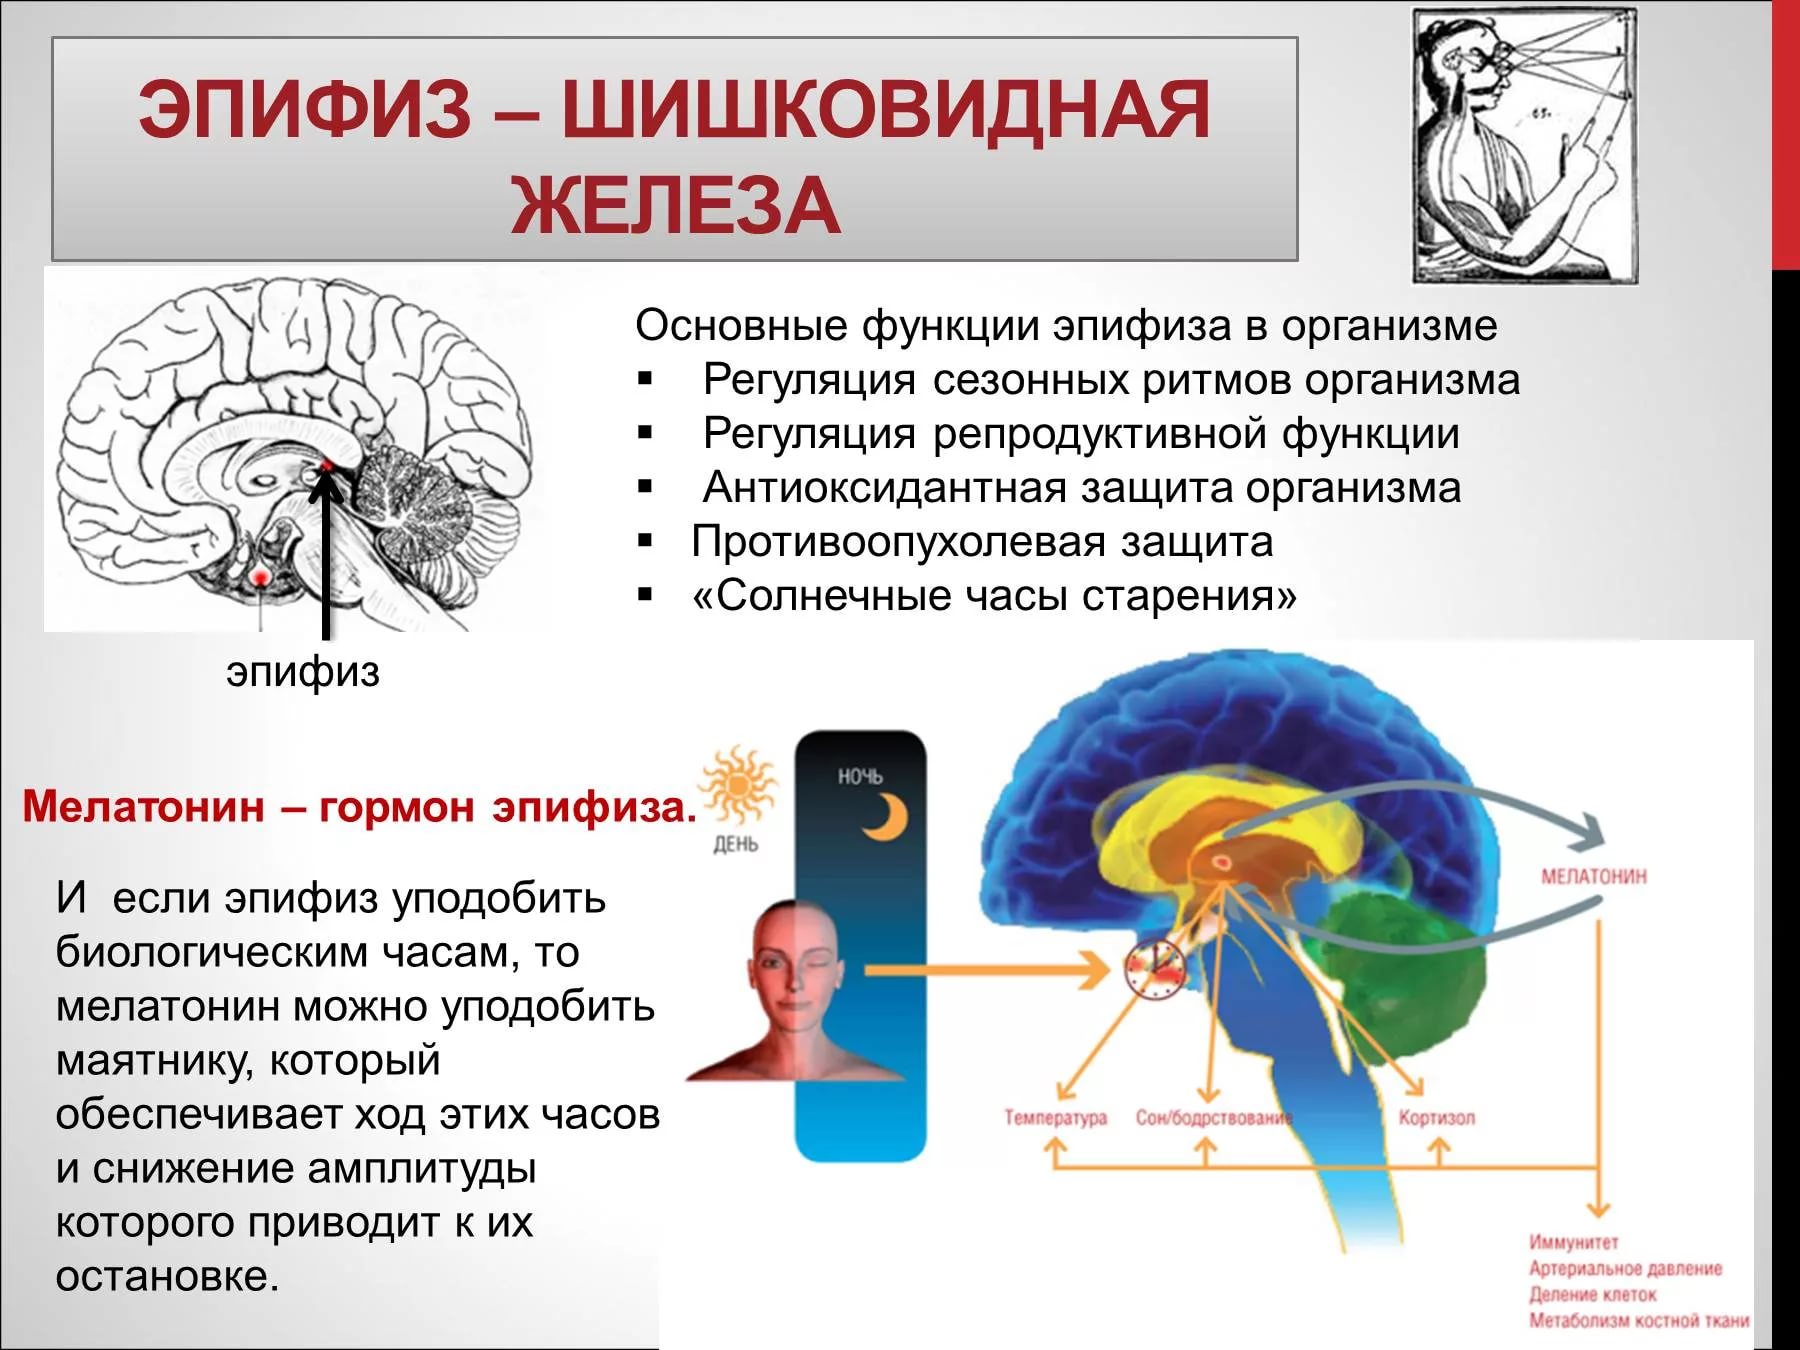 Какой гормон головной мозг. Эпифиз или шишковидная железа. Функция эпифиза в головном мозге. Шишковидное тело в головном мозге. Эпифиз гормоны и функции.